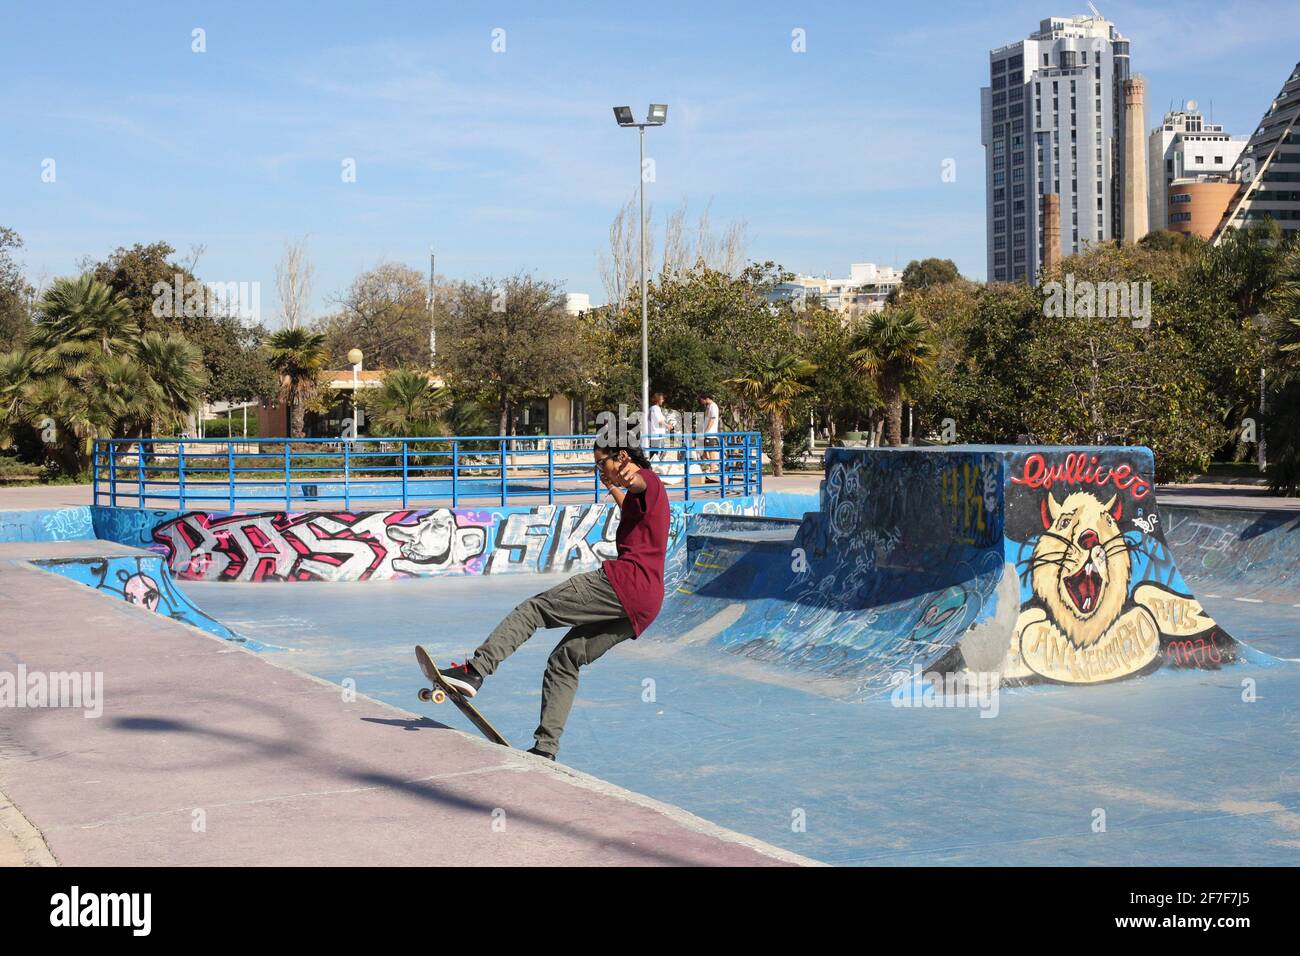 Urban skate boarder in  Valencia city in Spain Stock Photo